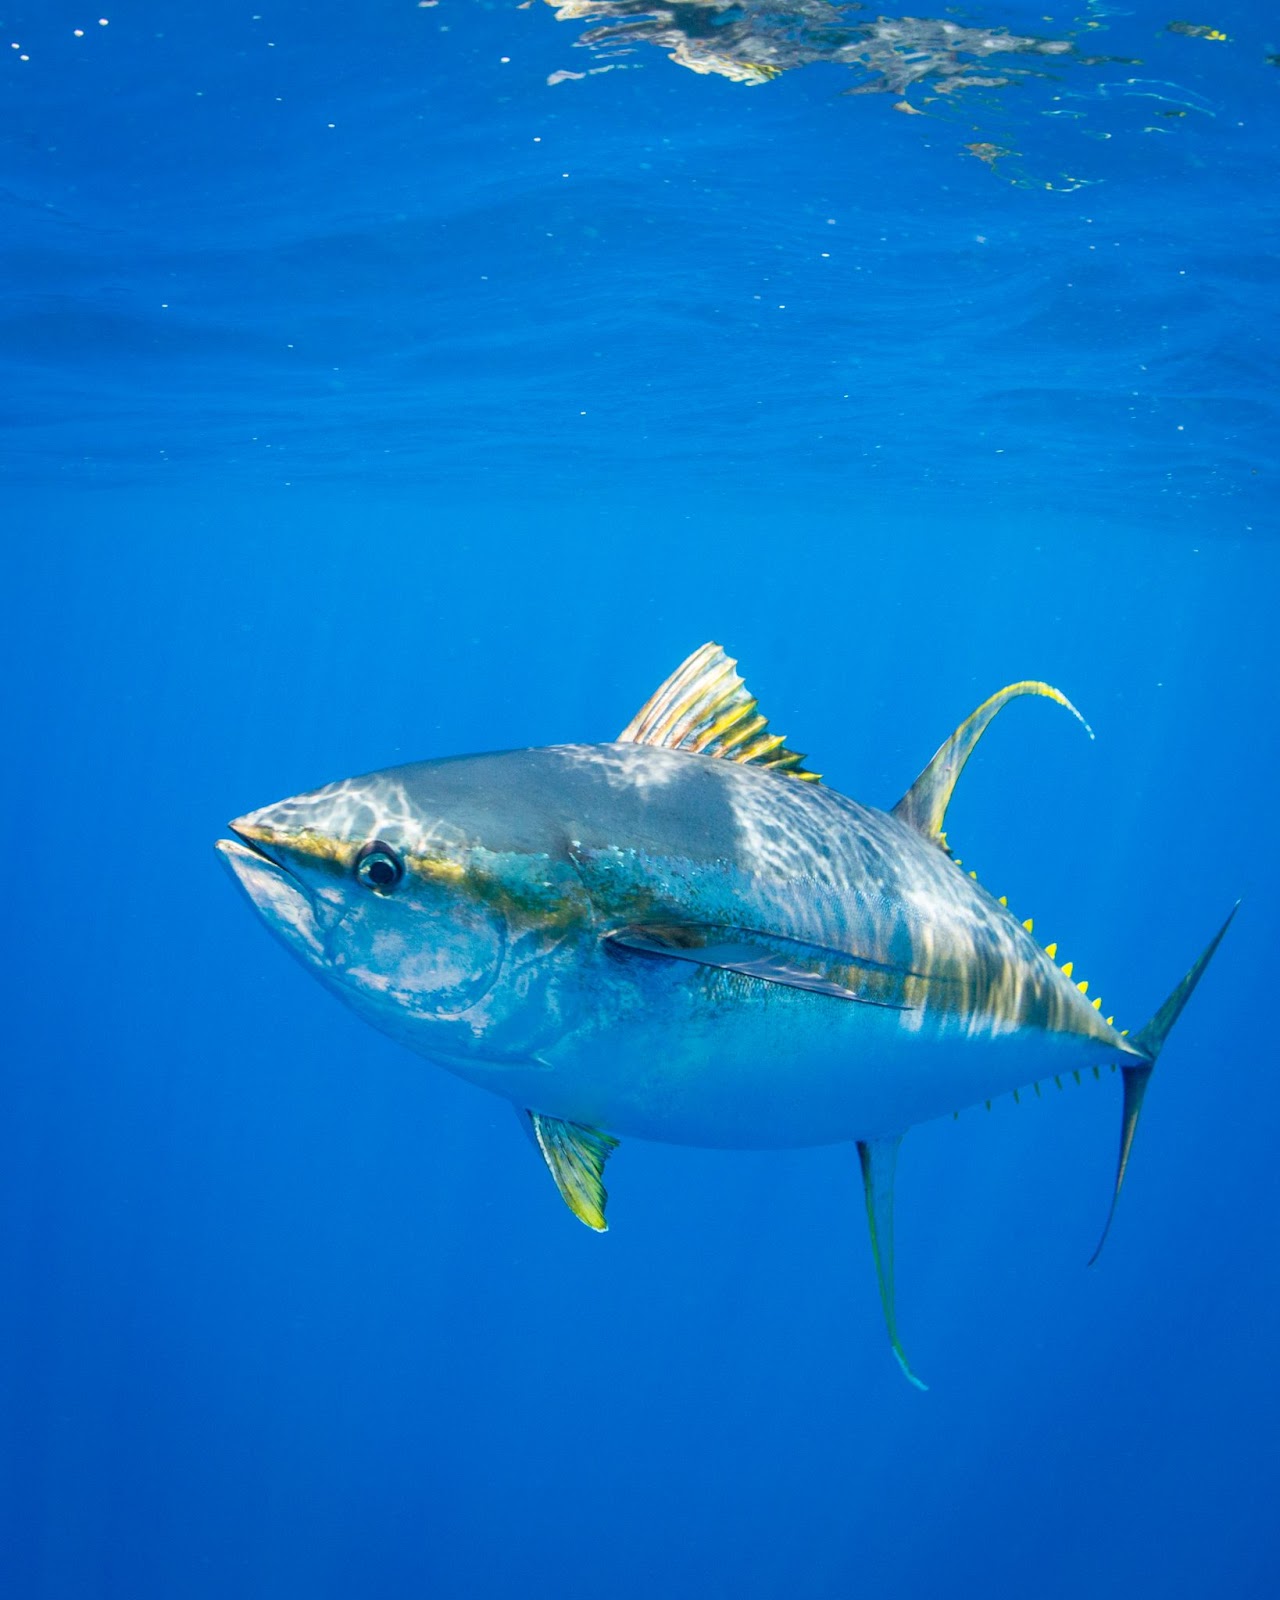 Face à la surpêche, les populations de grands poissons, comme les thons, se sont effondrées. Image: Ellen Cuylaerts / Ocean Image Bank